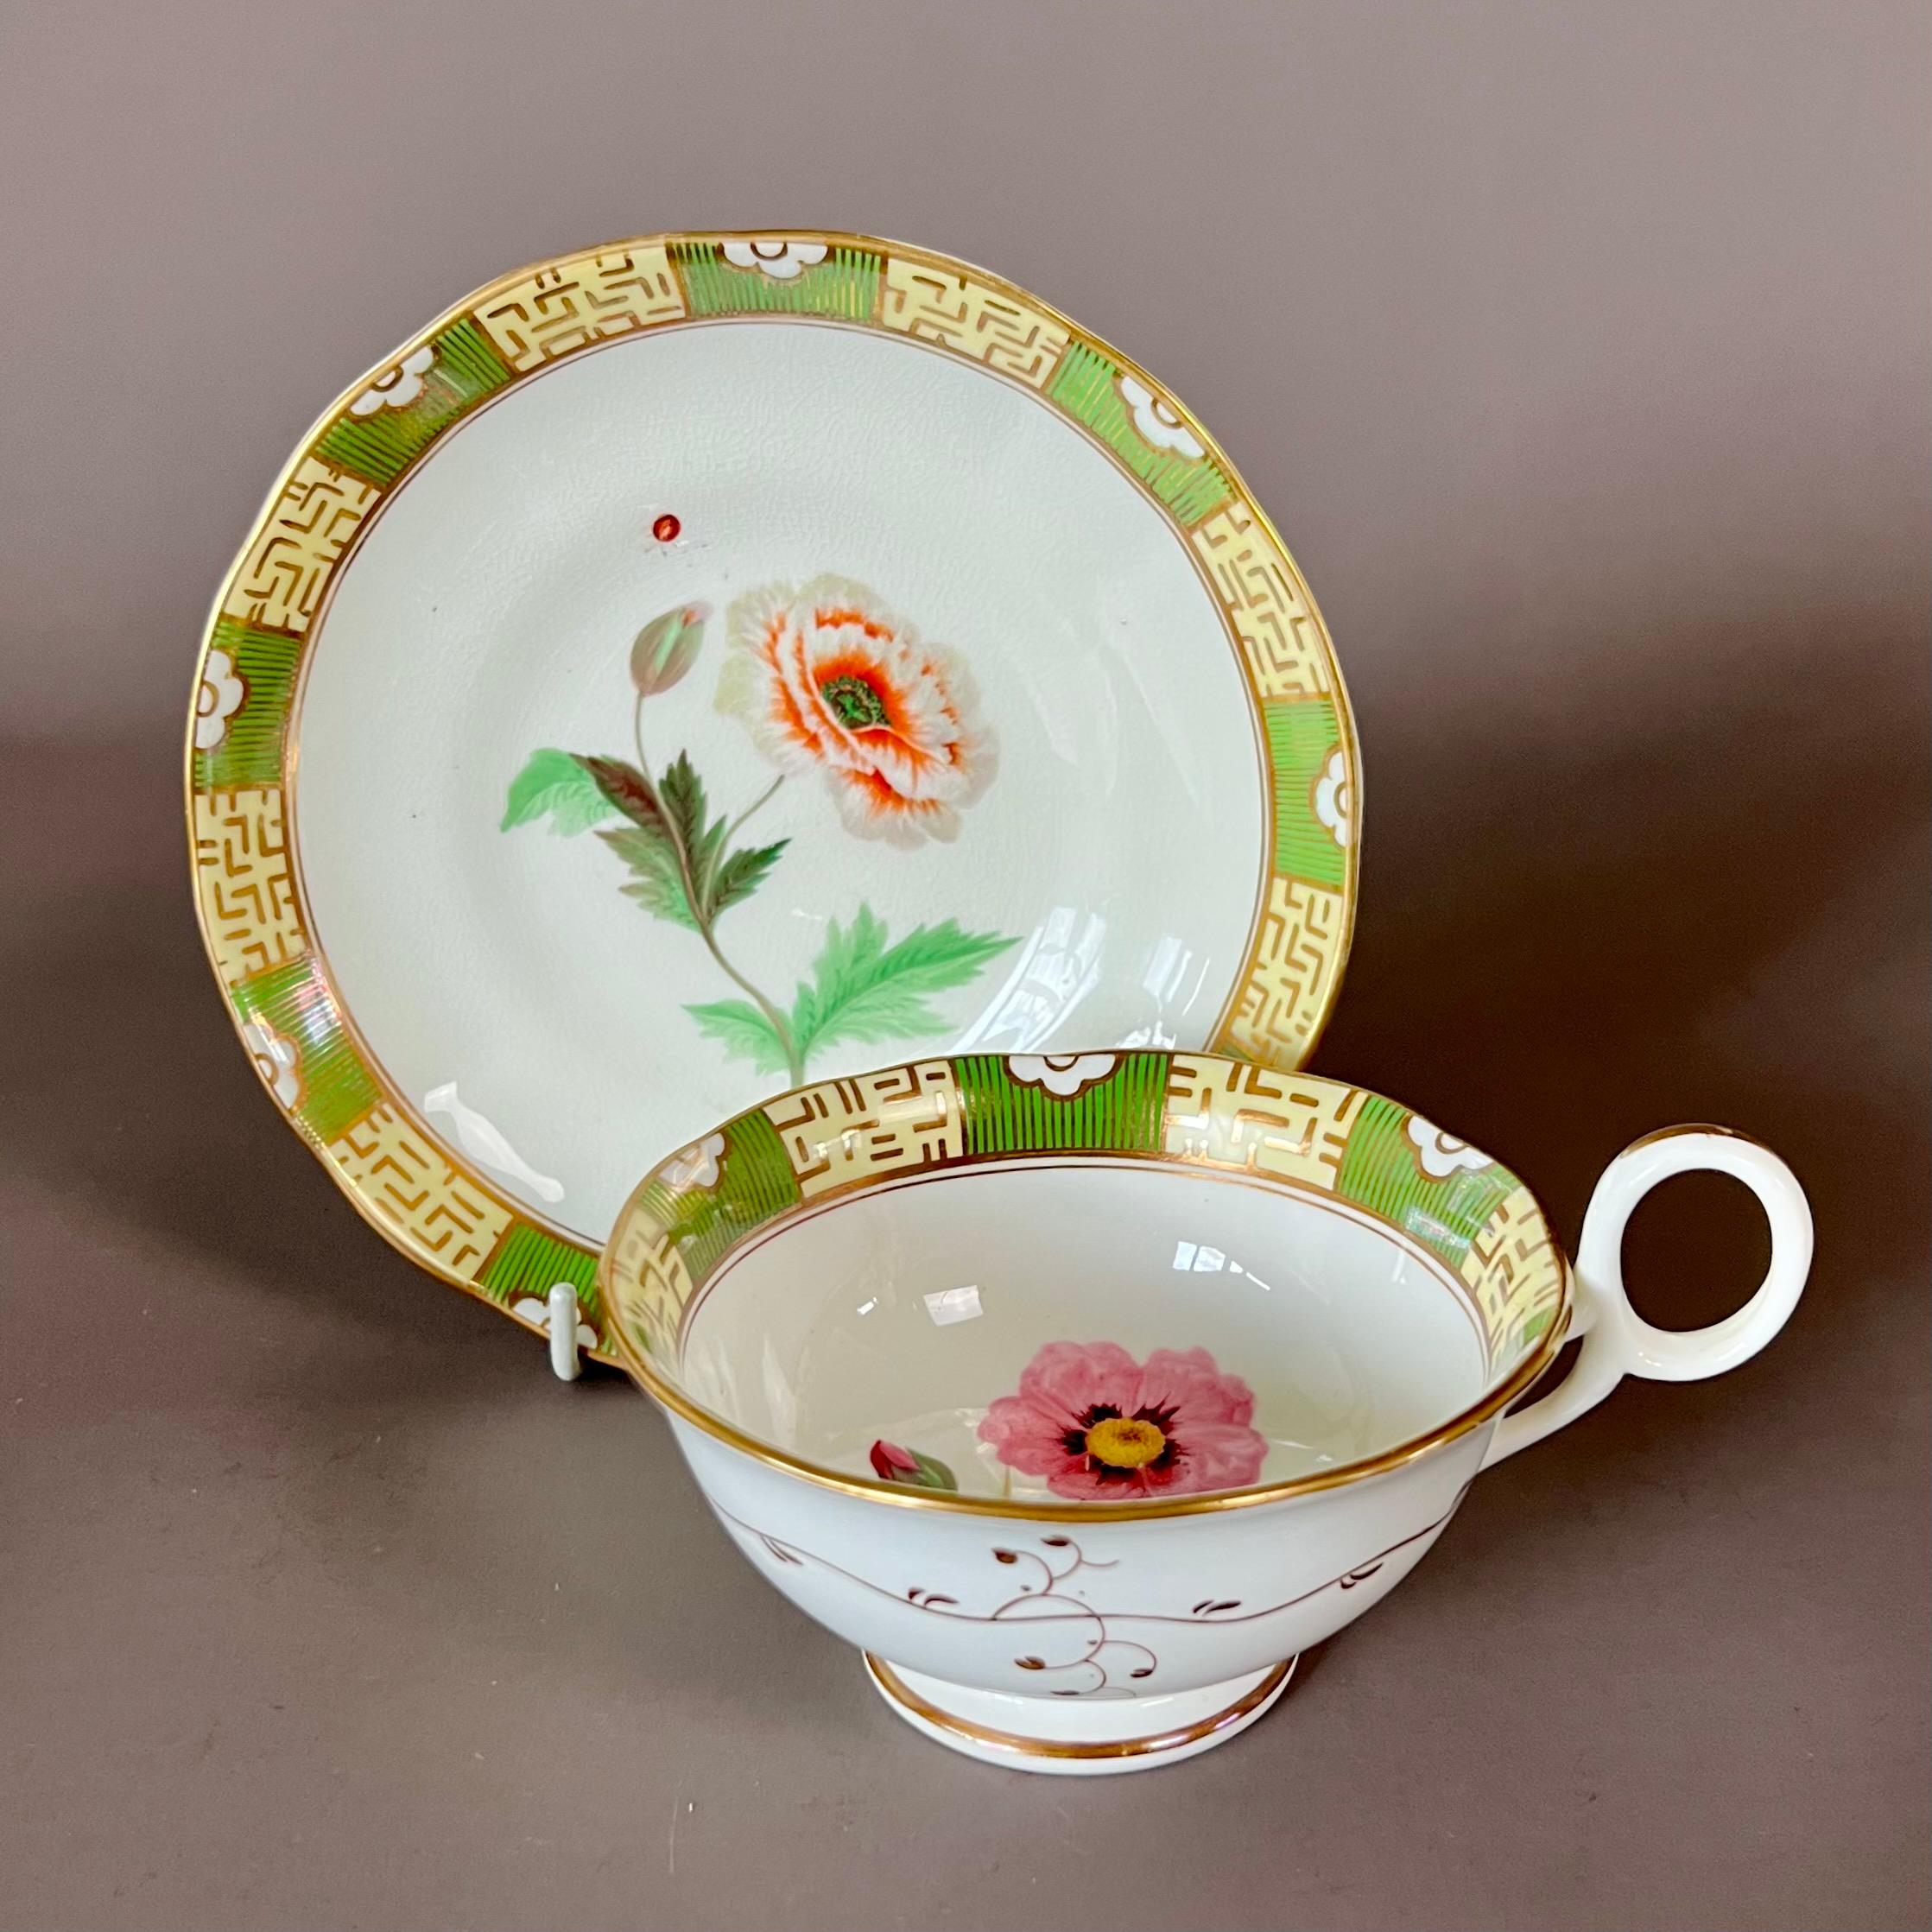 Tasse à thé et soucoupe avec anse en anneau, à fond vert et jaune pâle dans le style japonais, avec de belles études de fleurs au centre de chaque pièce et une petite coccinelle sur la soucoupe.

Modèle 8184
Année : vers 1843
Taille : tasse à thé